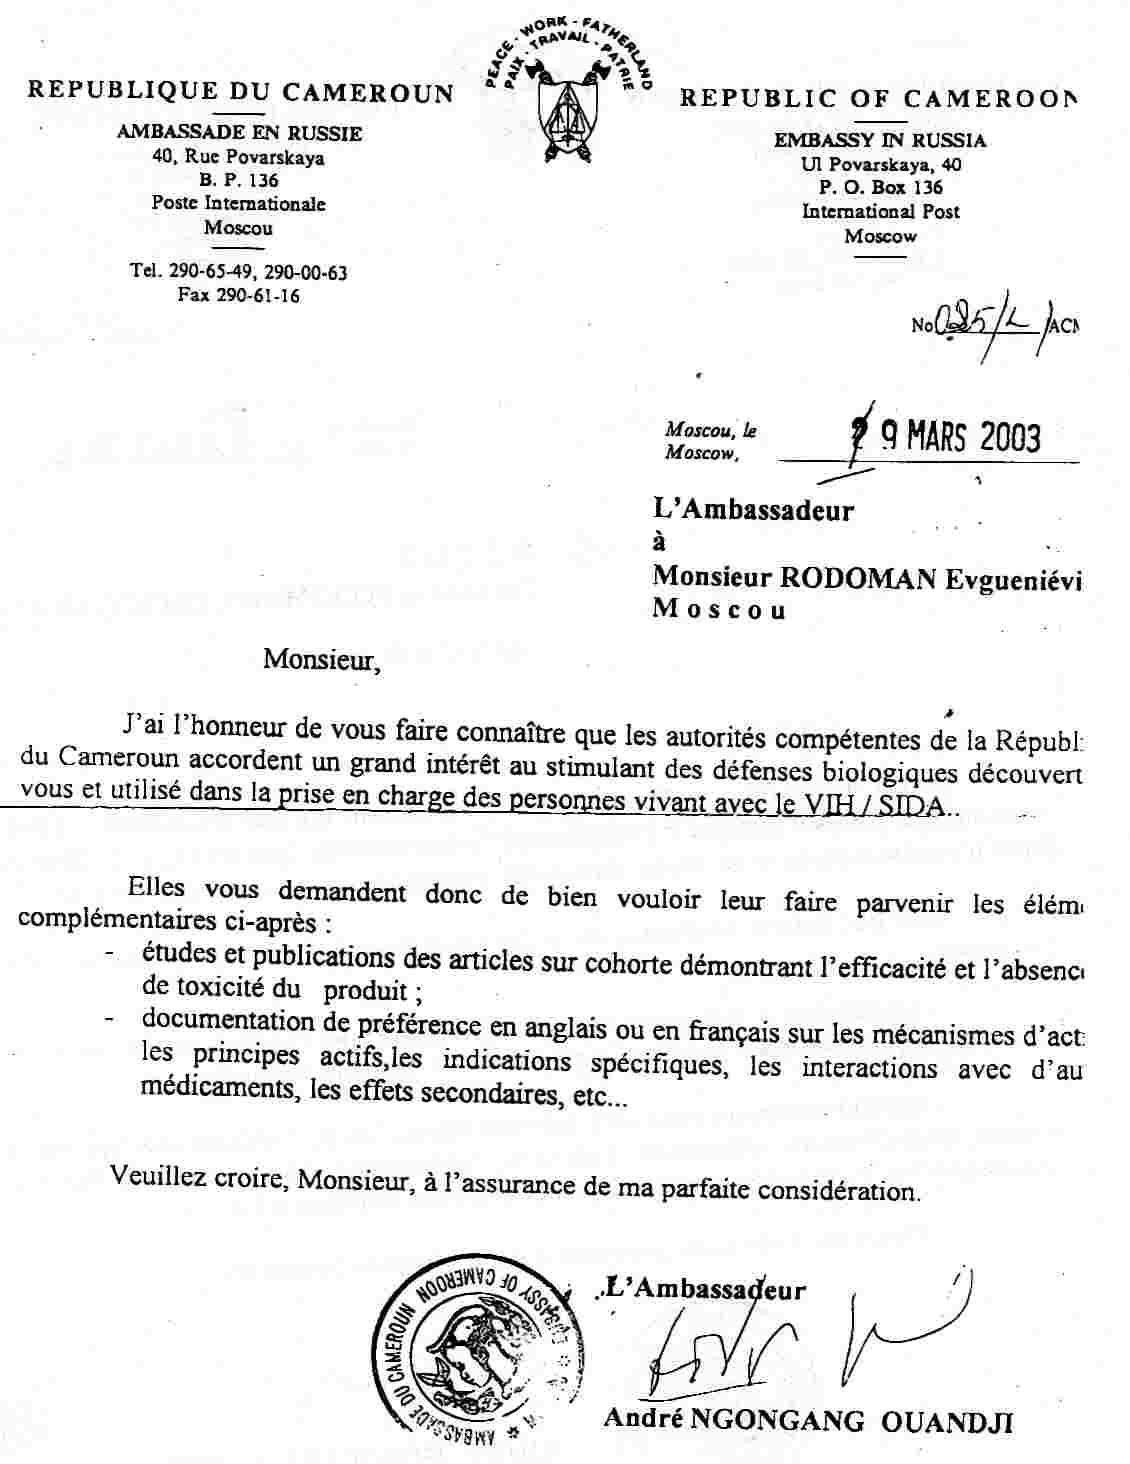 Иммуновит: приглашение профессору Родоману В.Е. посетить Камерун, 2003 г.